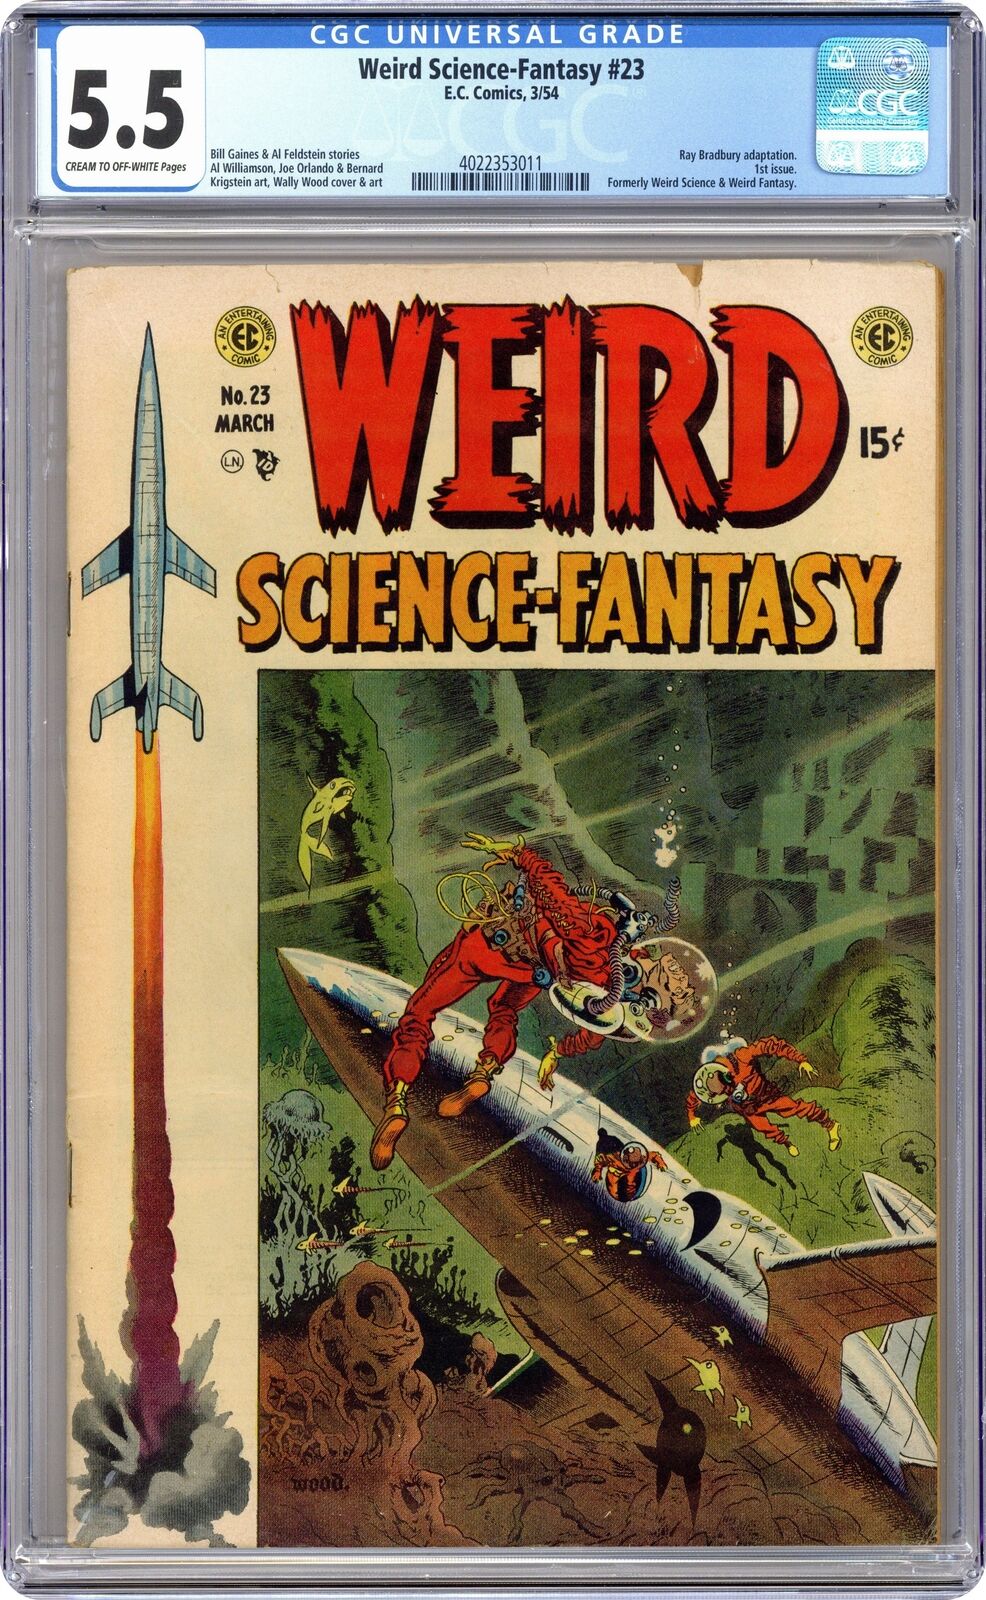 Weird Science-Fantasy #23 CGC 5.5 1954 4022353011